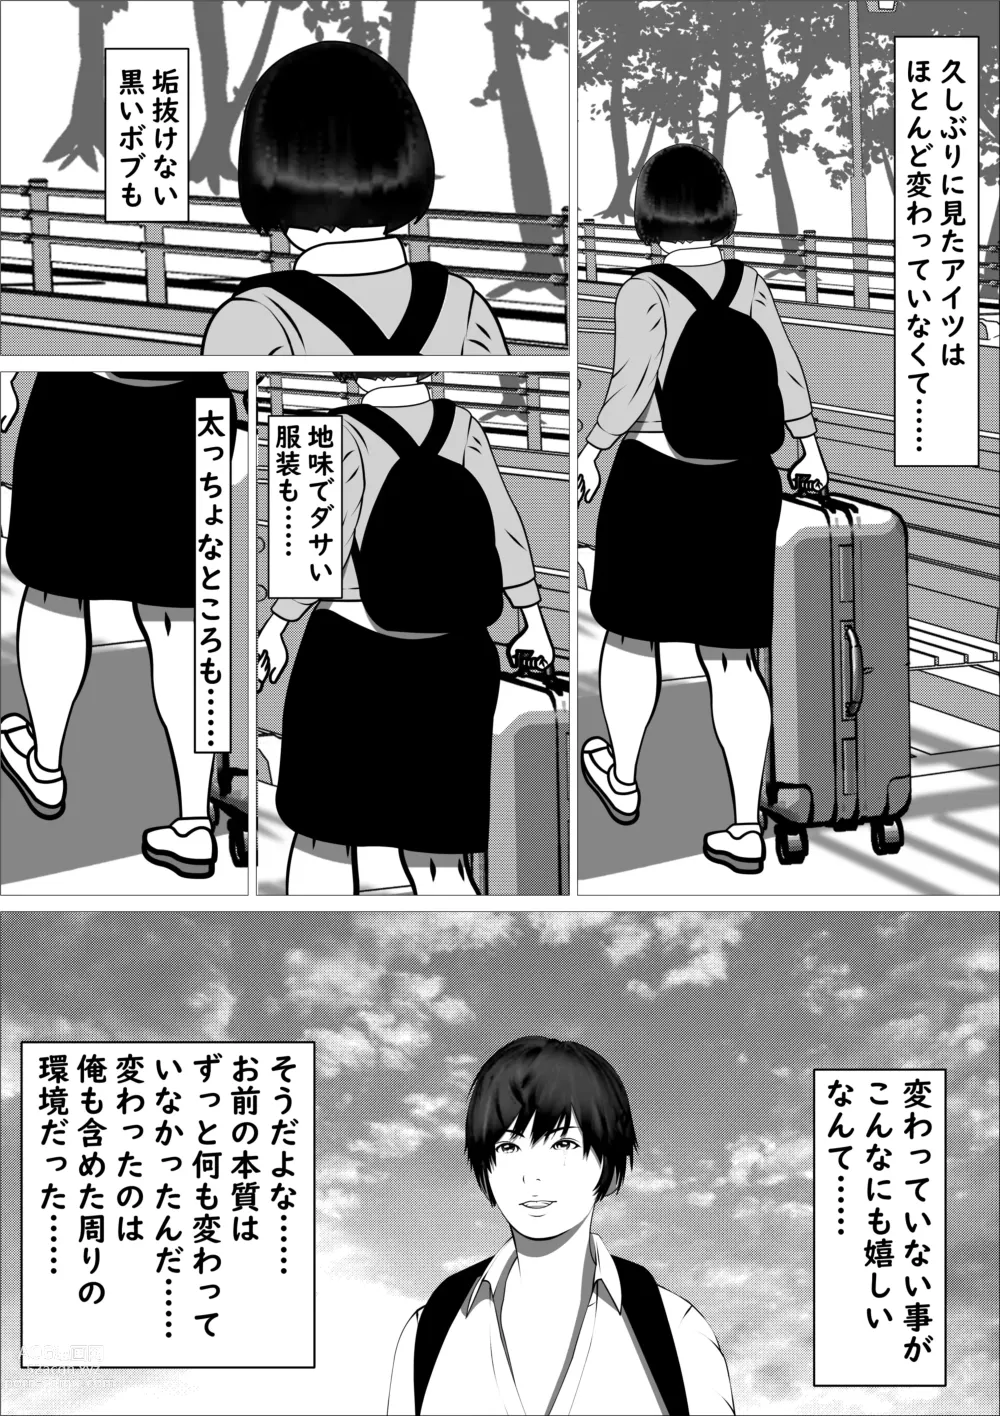 Page 84 of doujinshi Pink no Taiyou